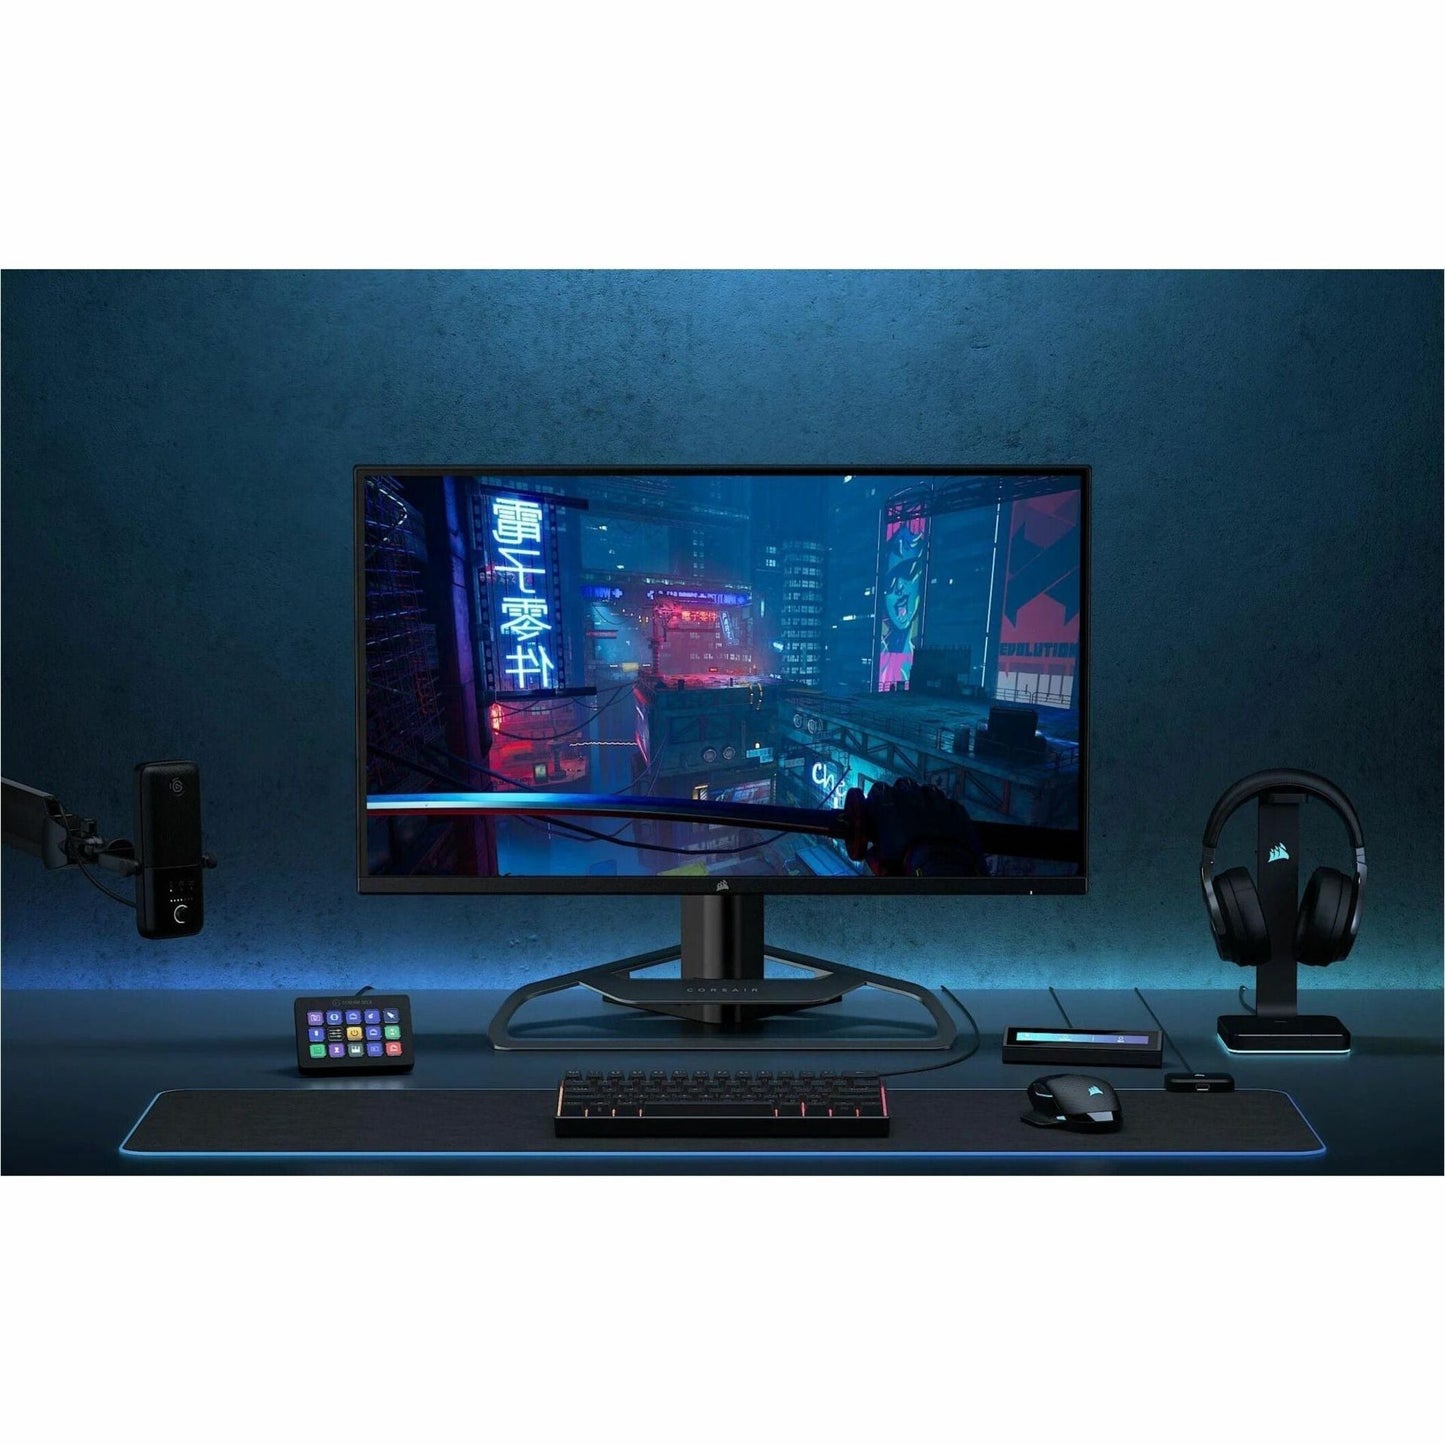 Corsair XENEON 32QHD165 32" WQHD Gaming LED Monitor - 16:9